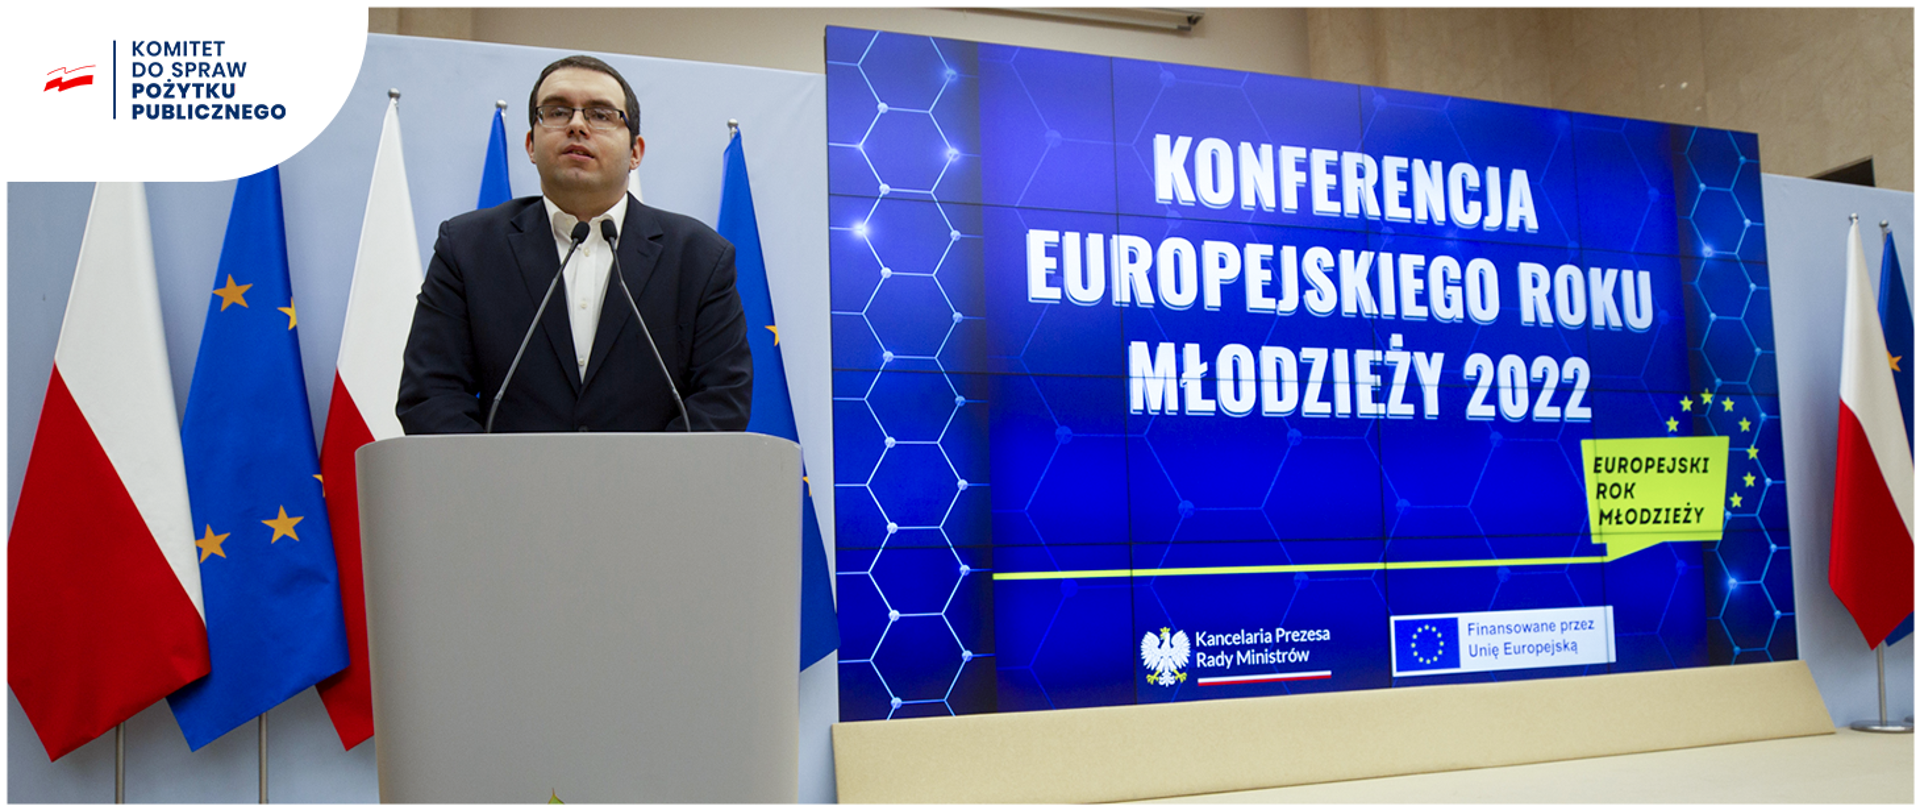 Min. Mazurek wręczył nagrody podczas konferencji Europejskiego Roku Młodzieży